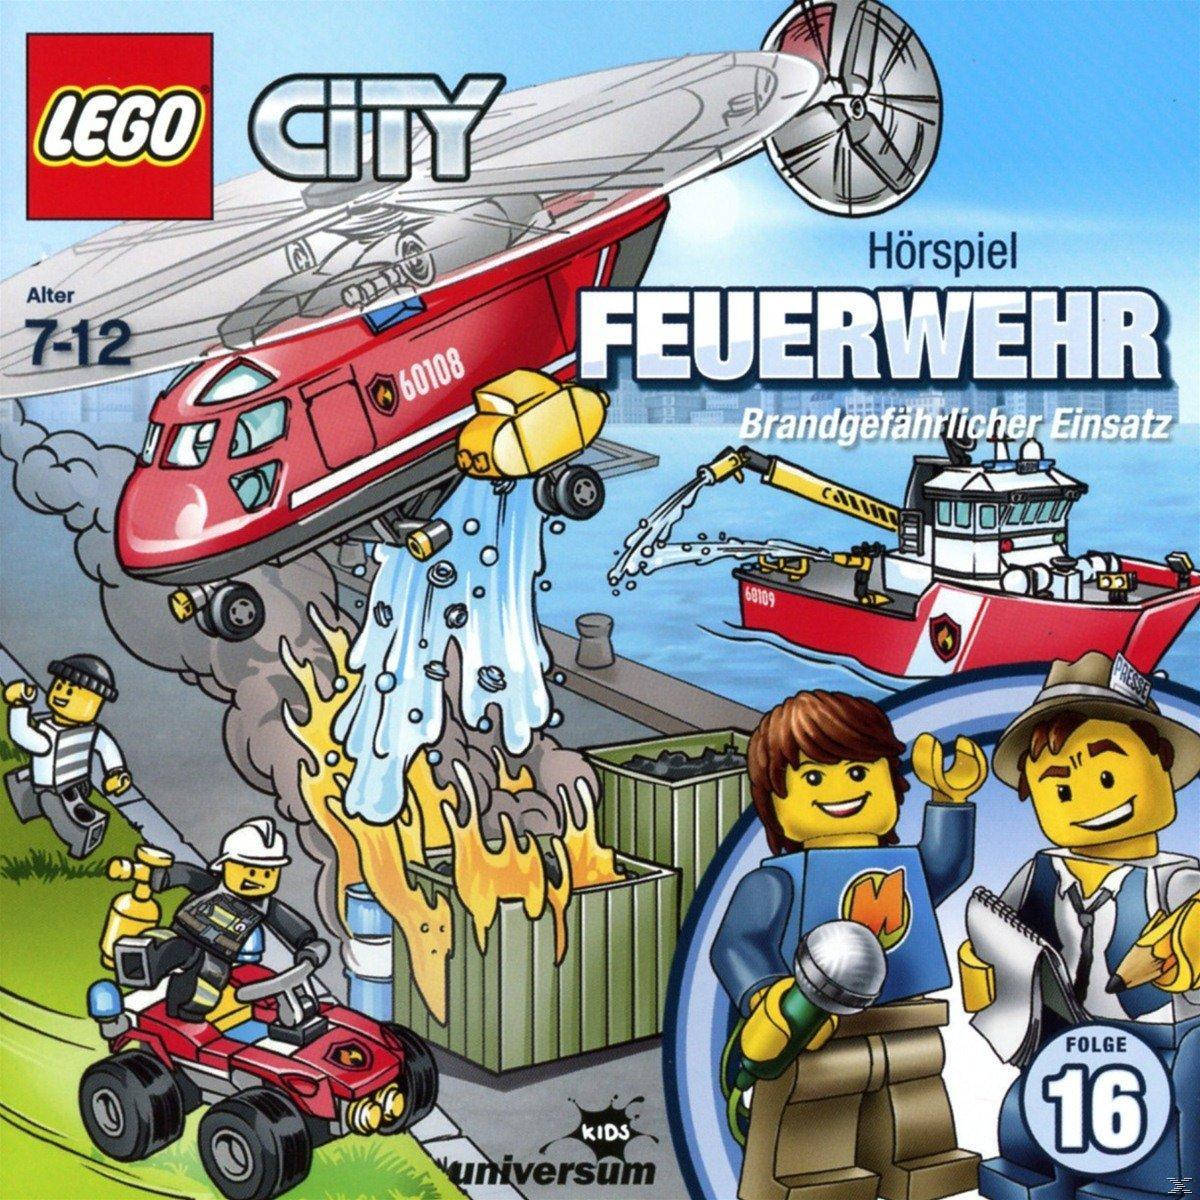 Feuerwehr Lego 16: - City - City Lego (Cd) (CD)